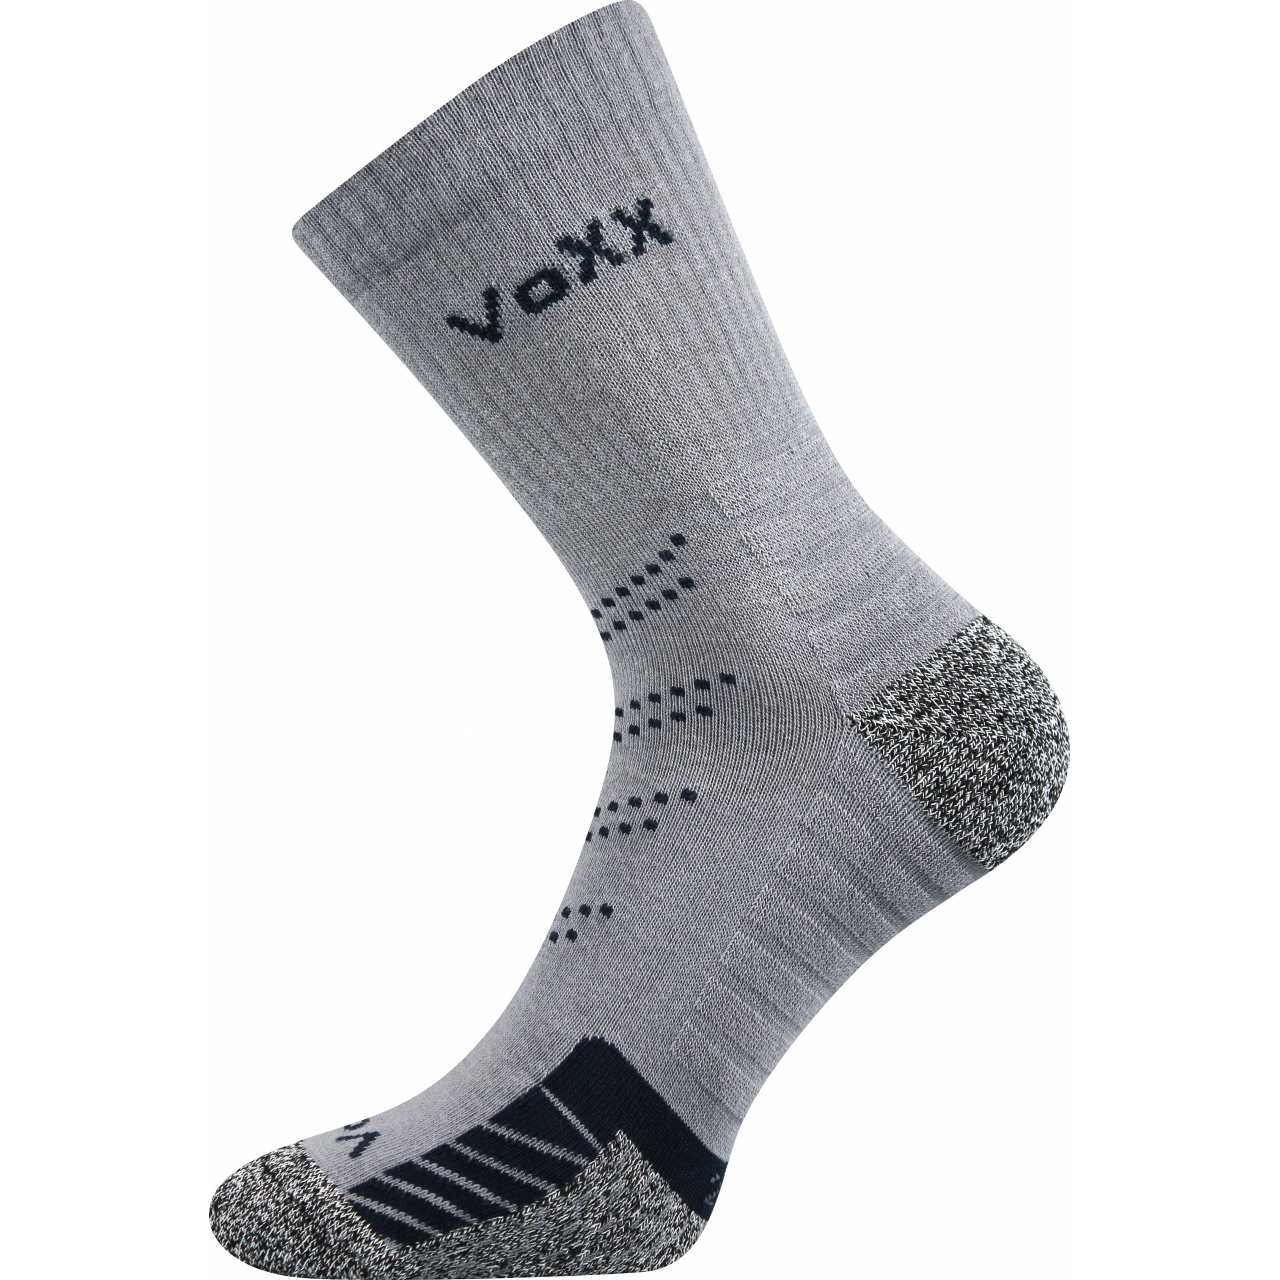 Ponožky sportovní Voxx Linea - šedé-černé, 39-42